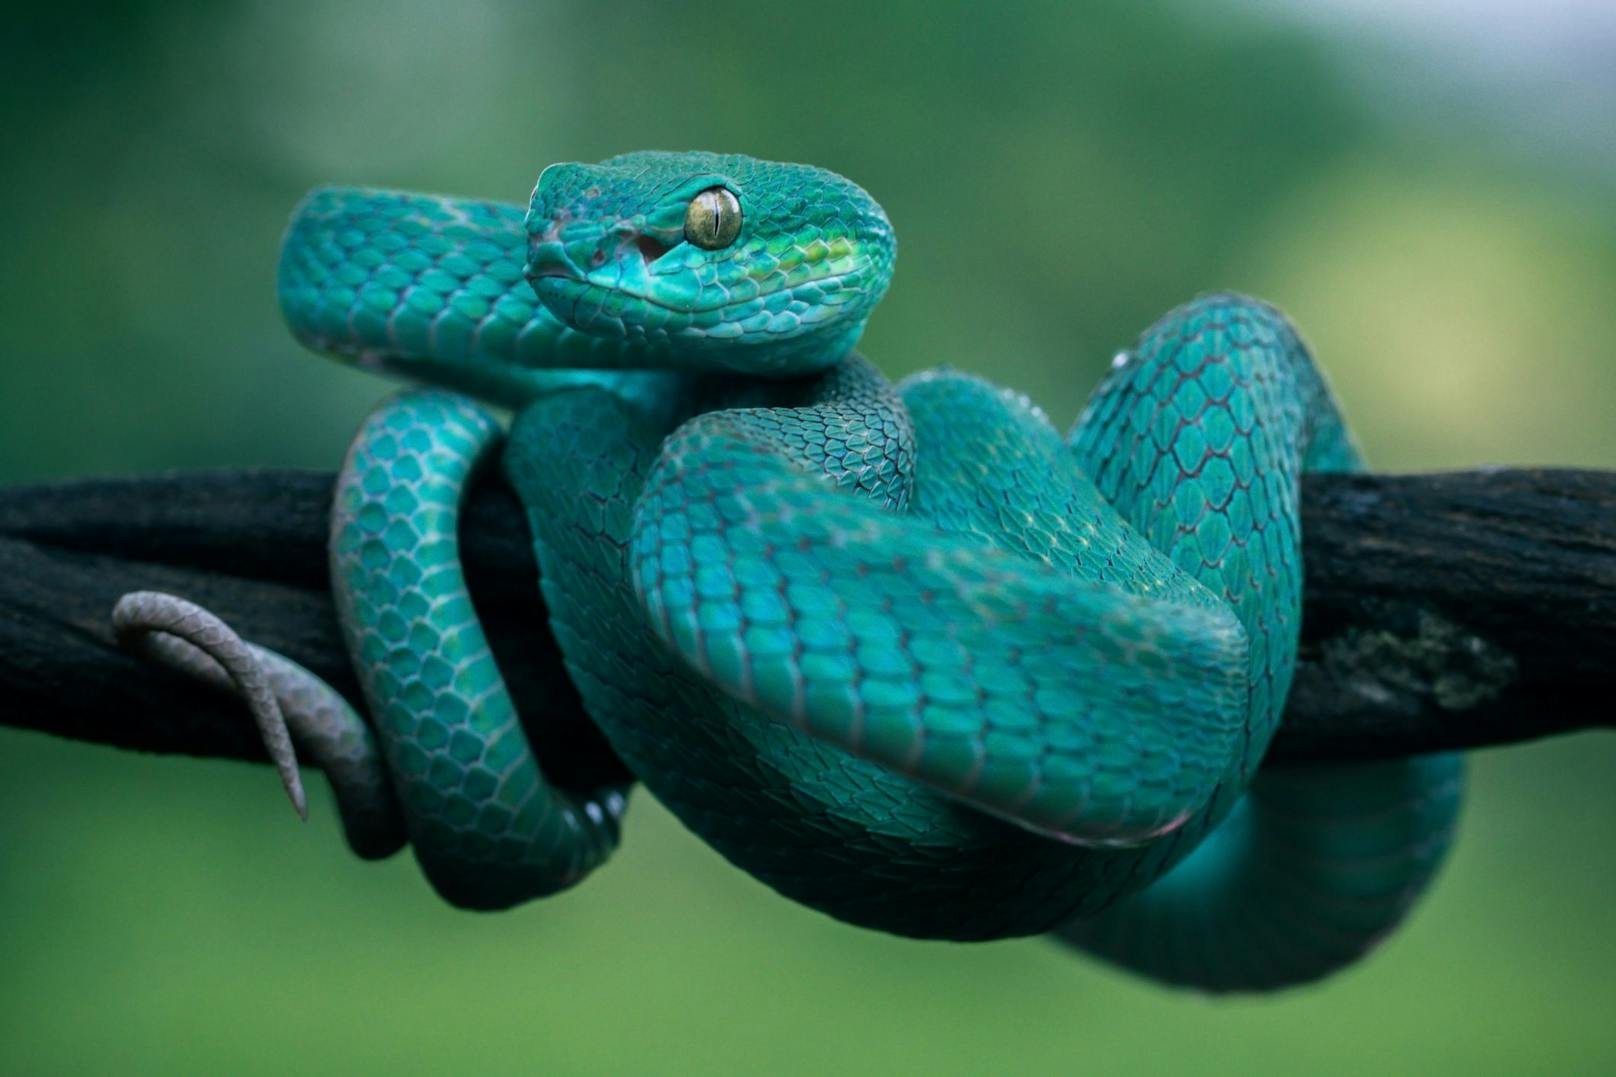 Da sie so selten vorkommen, zahlen Schlangensammler und Züchter sehr hohe Preise für eine "blaue" Schlange. 